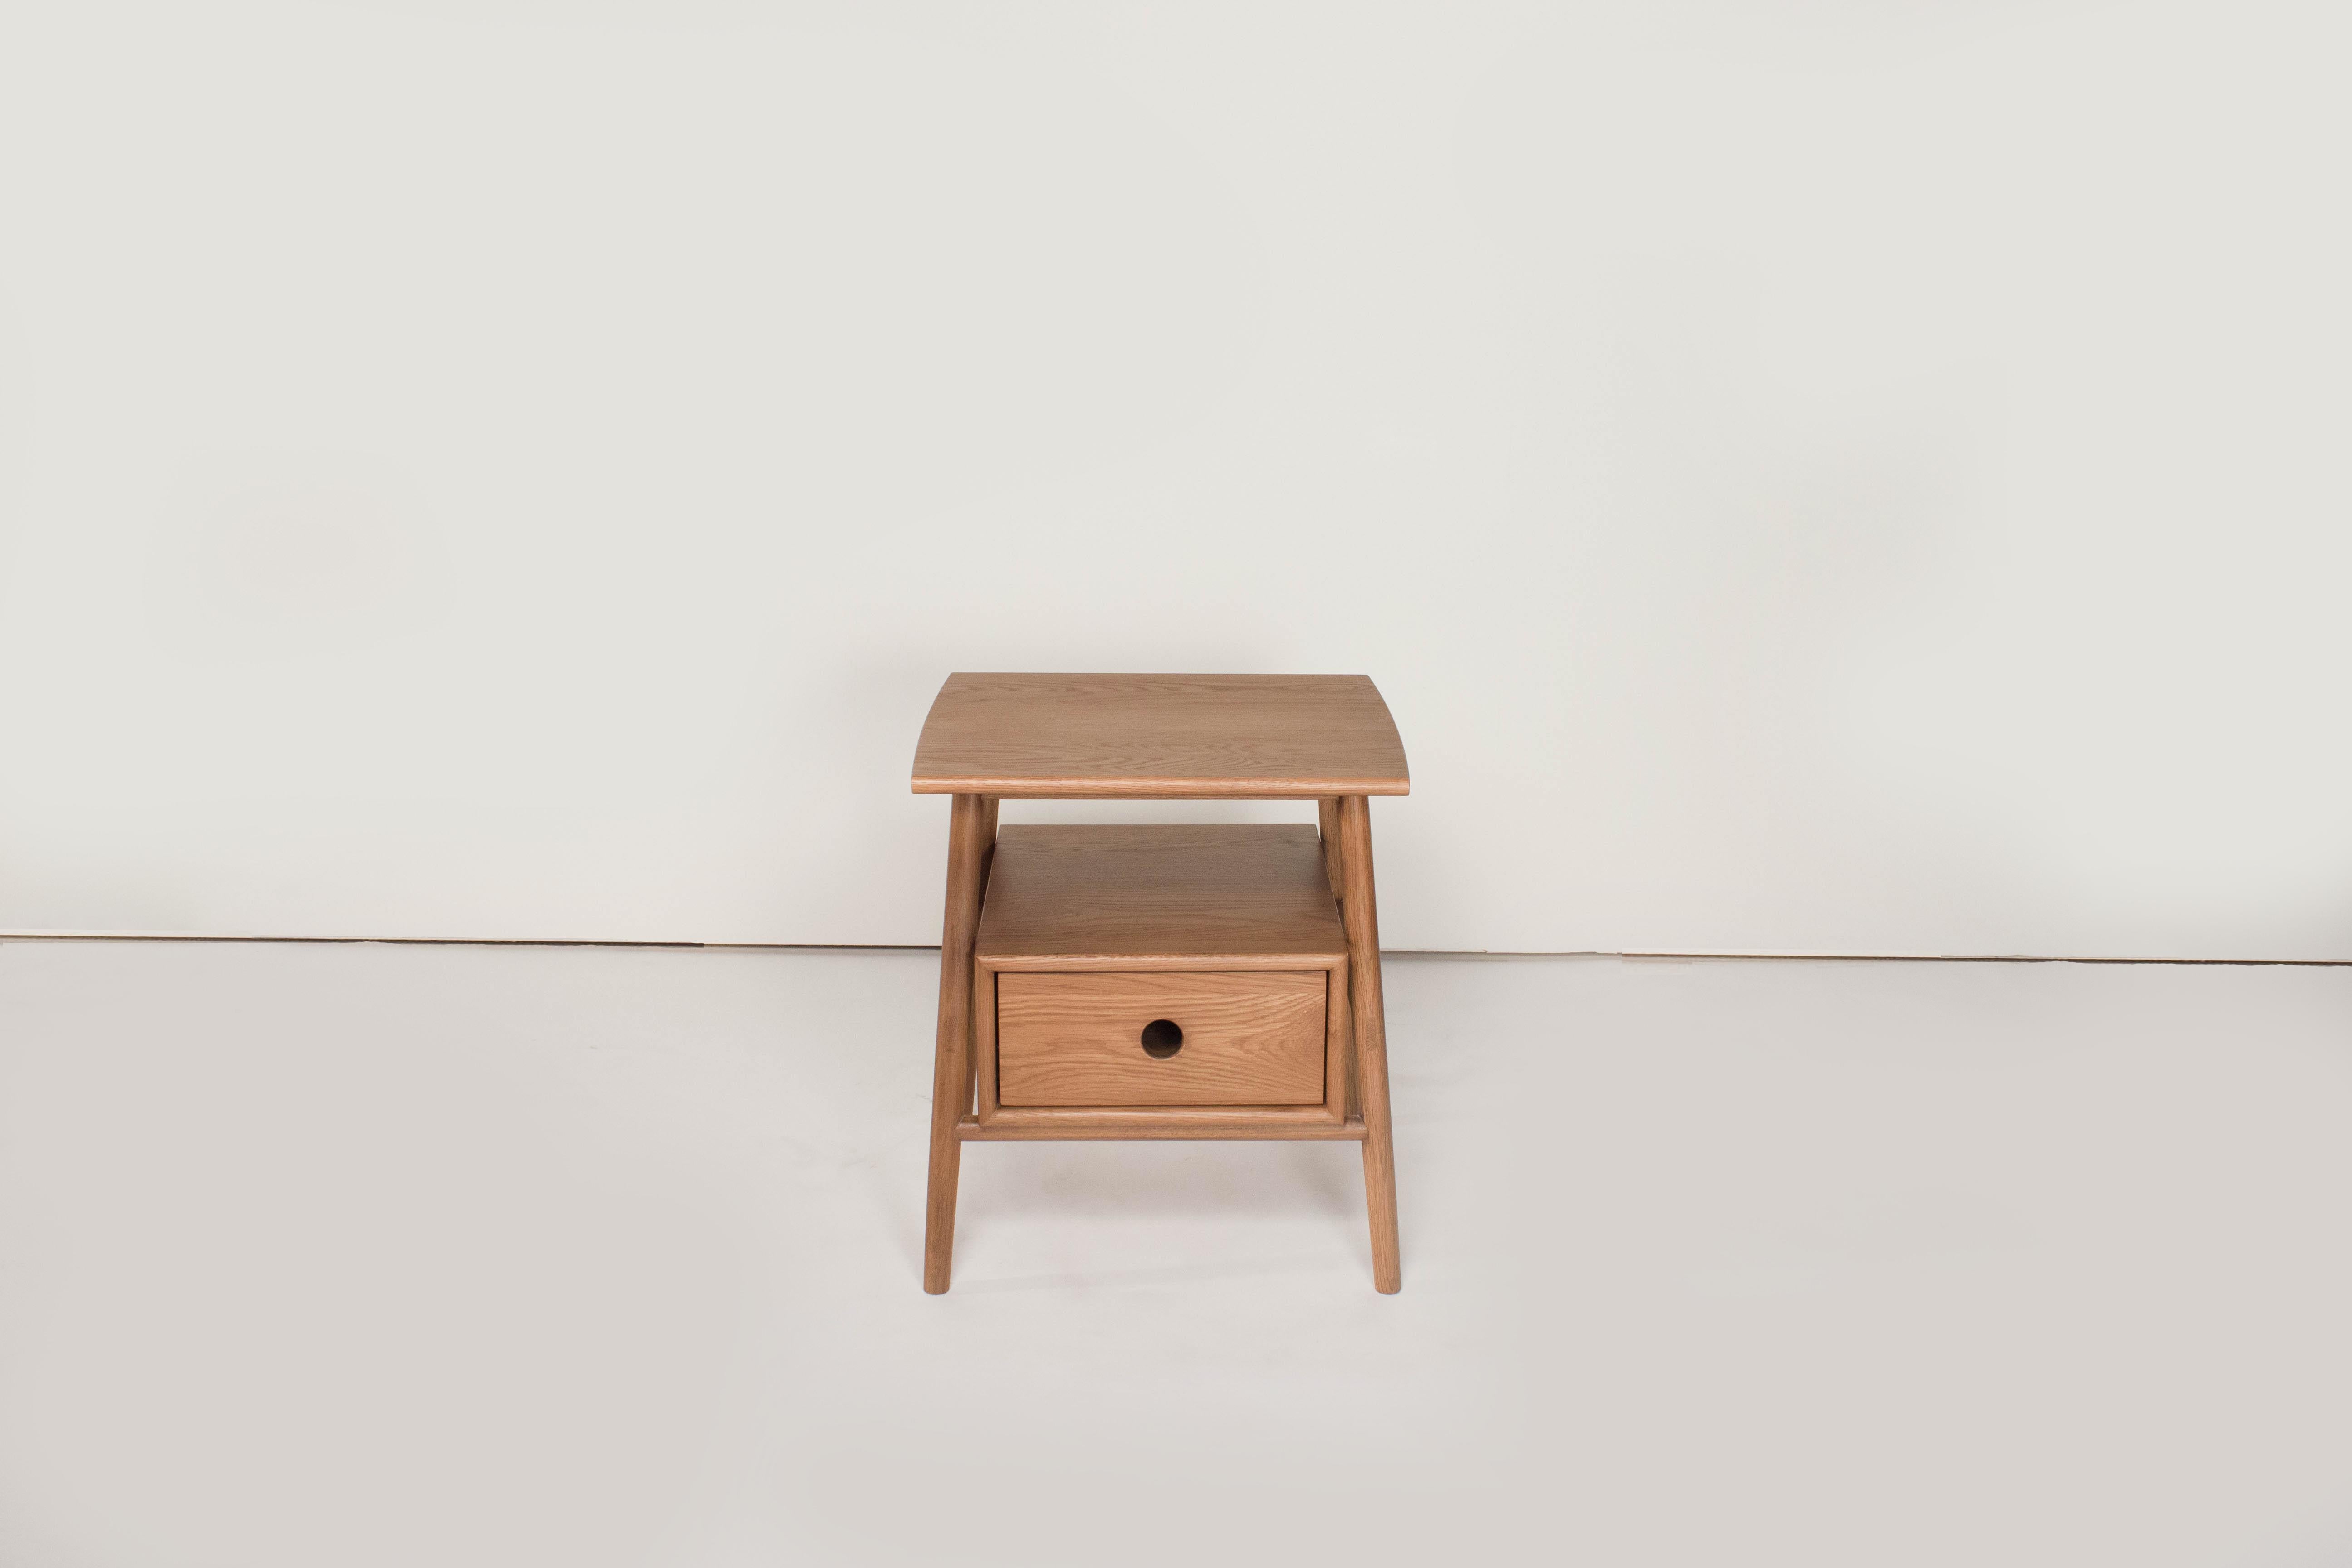 Sun at six est un studio de conception de meubles contemporains qui travaille avec des maîtres menuisiers chinois traditionnels pour fabriquer ses pièces à la main en utilisant la menuiserie traditionnelle. 

Un bon meuble commence par des matériaux